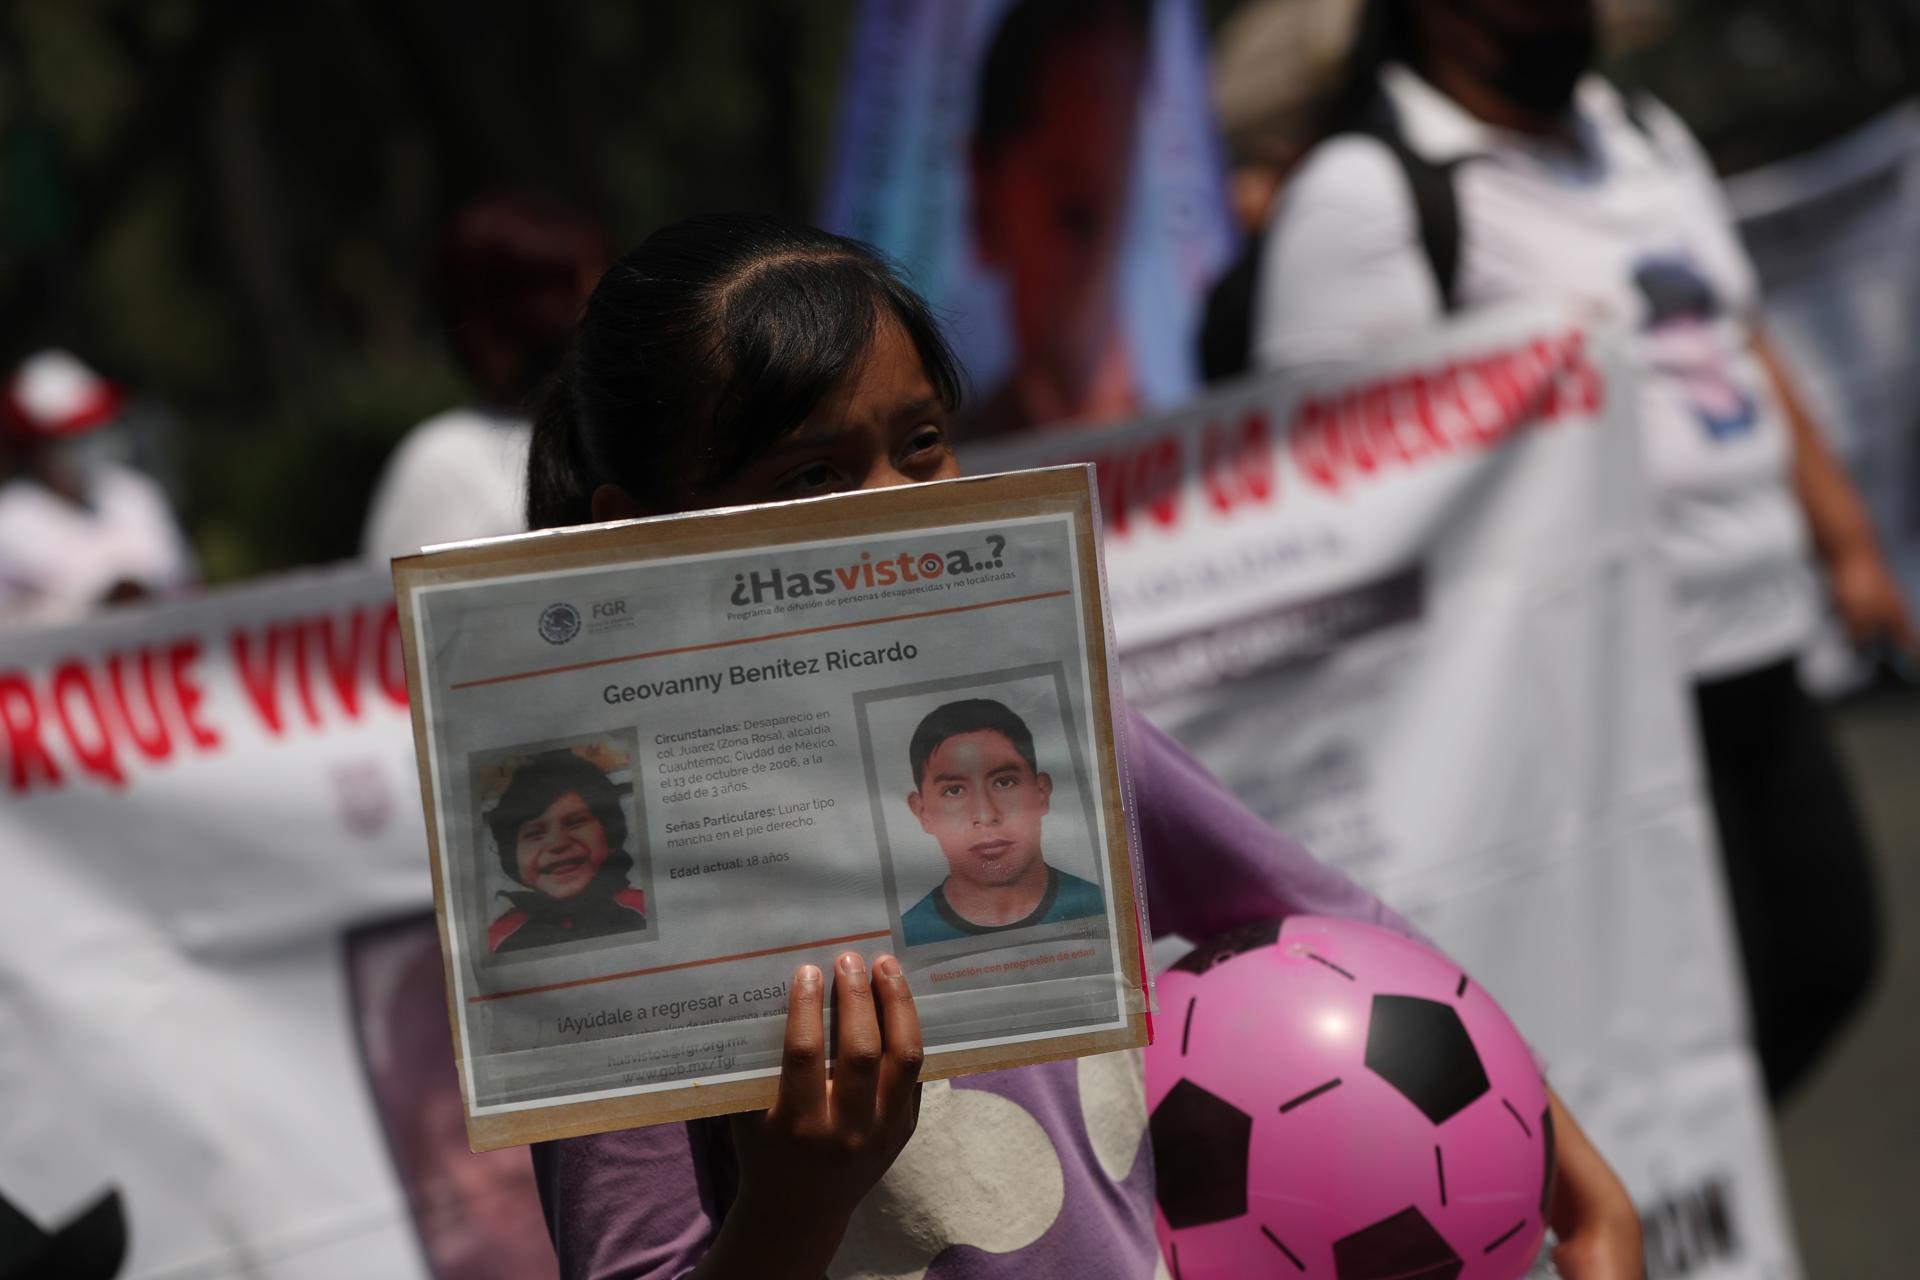 Menores acompañados por sus padres en una manifestación para exigir justicia por menores desaparecidos en el país. Imagen de archivo. EFE/Sáshenka Gutiérrez